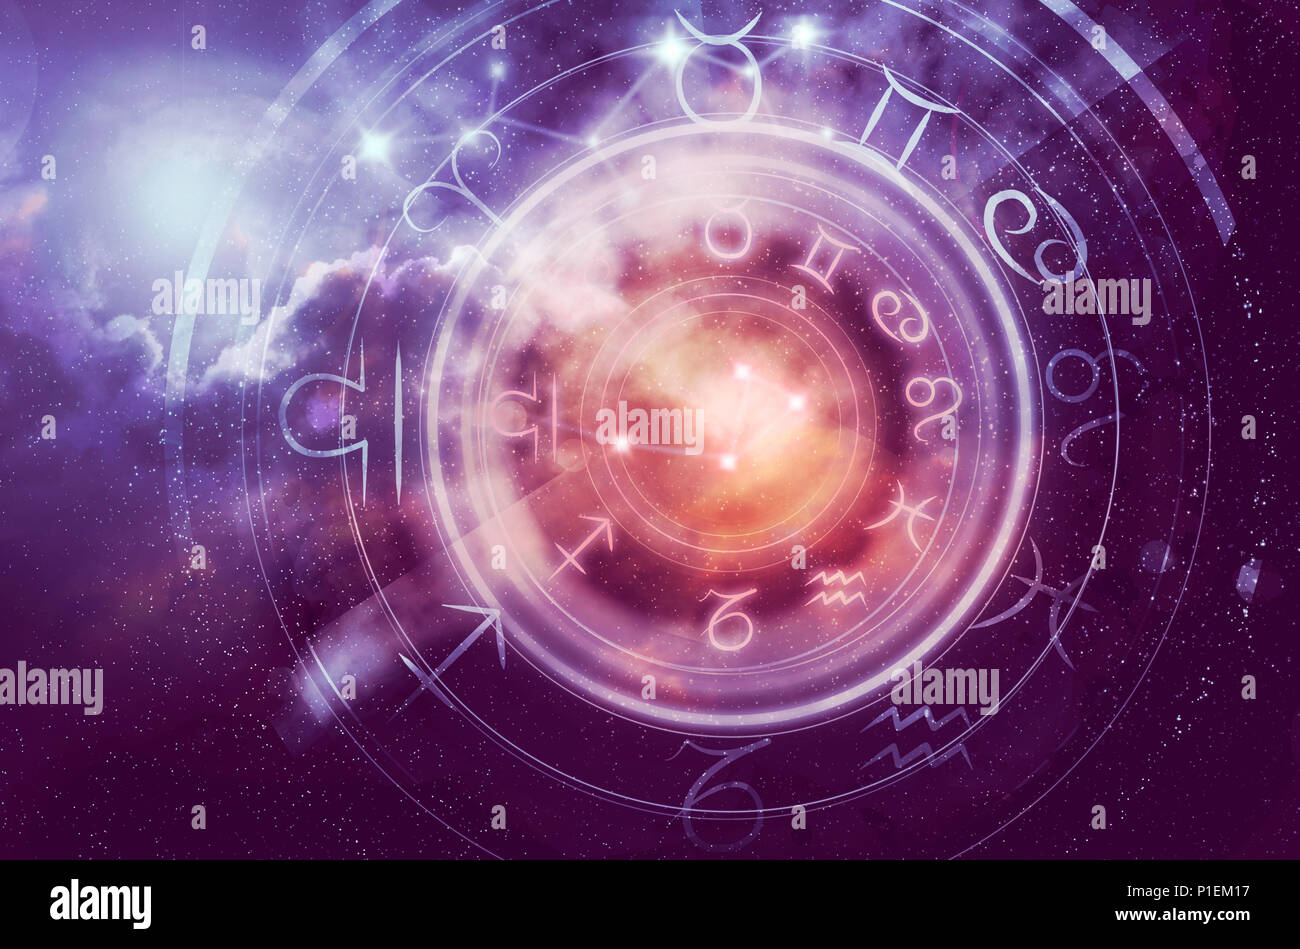 astrology horoscope background Stock Photo